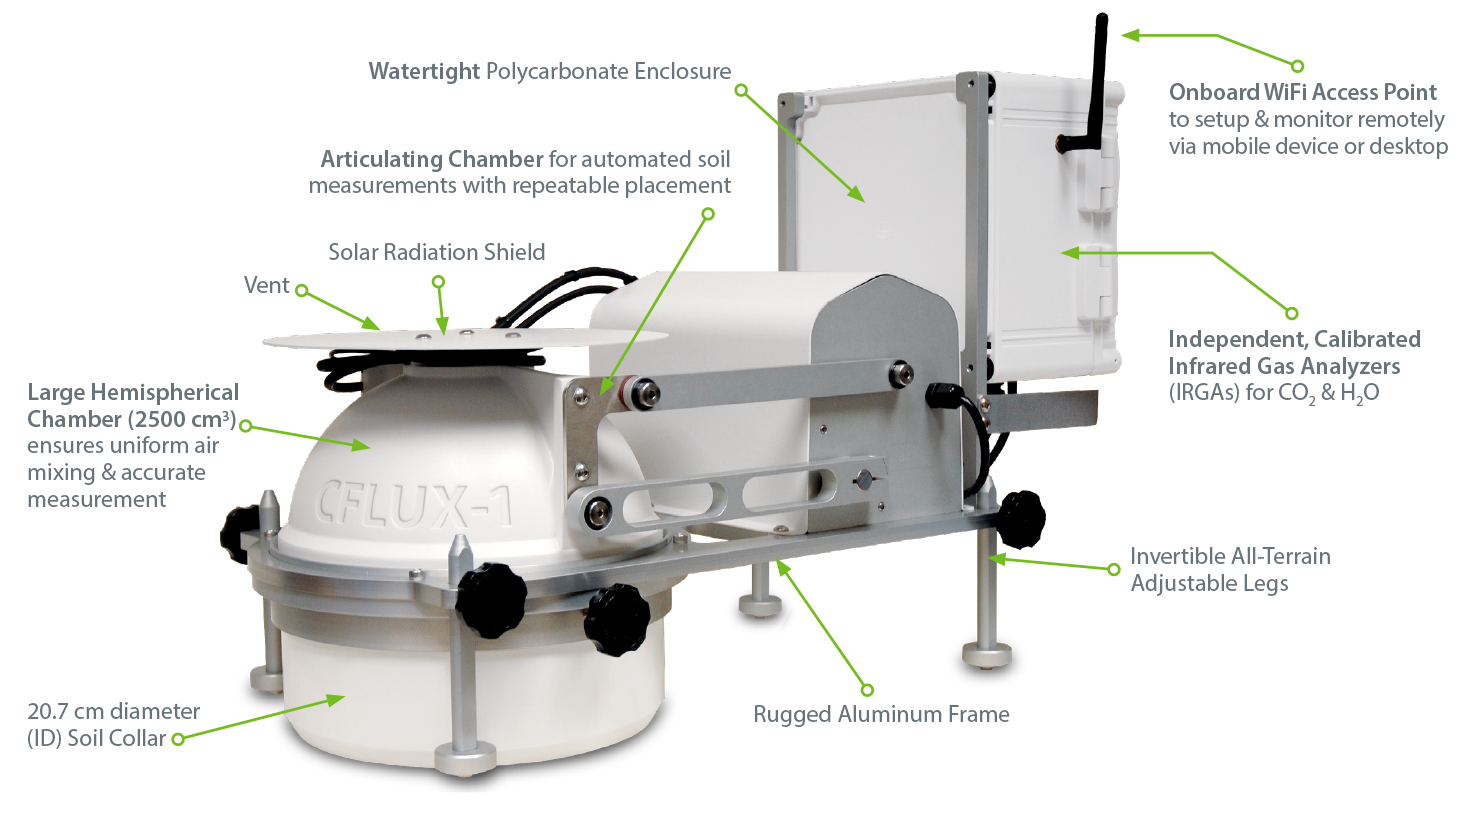 Pp system. Камера для измерения почвенного газообмена. Почвенная камера Smart Chamber. Портативная система измерения почвенного газообмена (co2 / h2o / ch4). Модель casa и CFLUX.